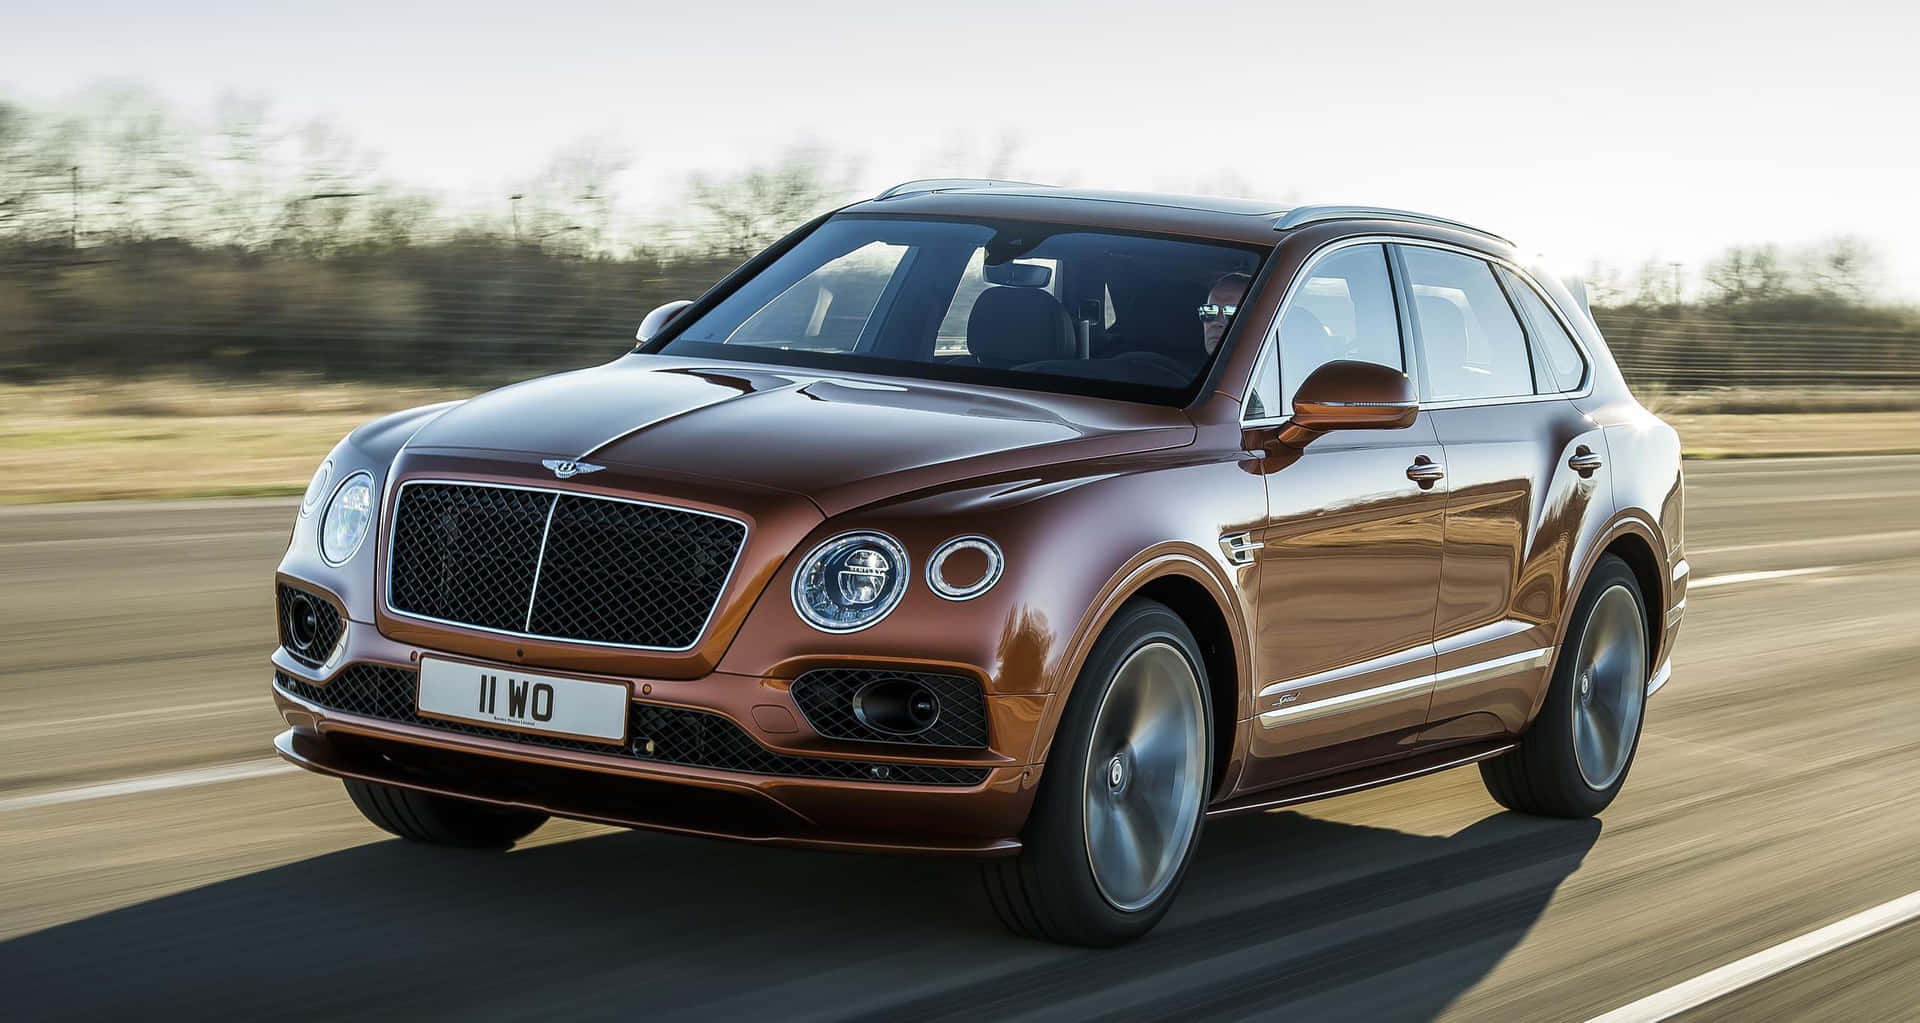 Luxury on Wheels - Bentley Bentayga SUV Wallpaper